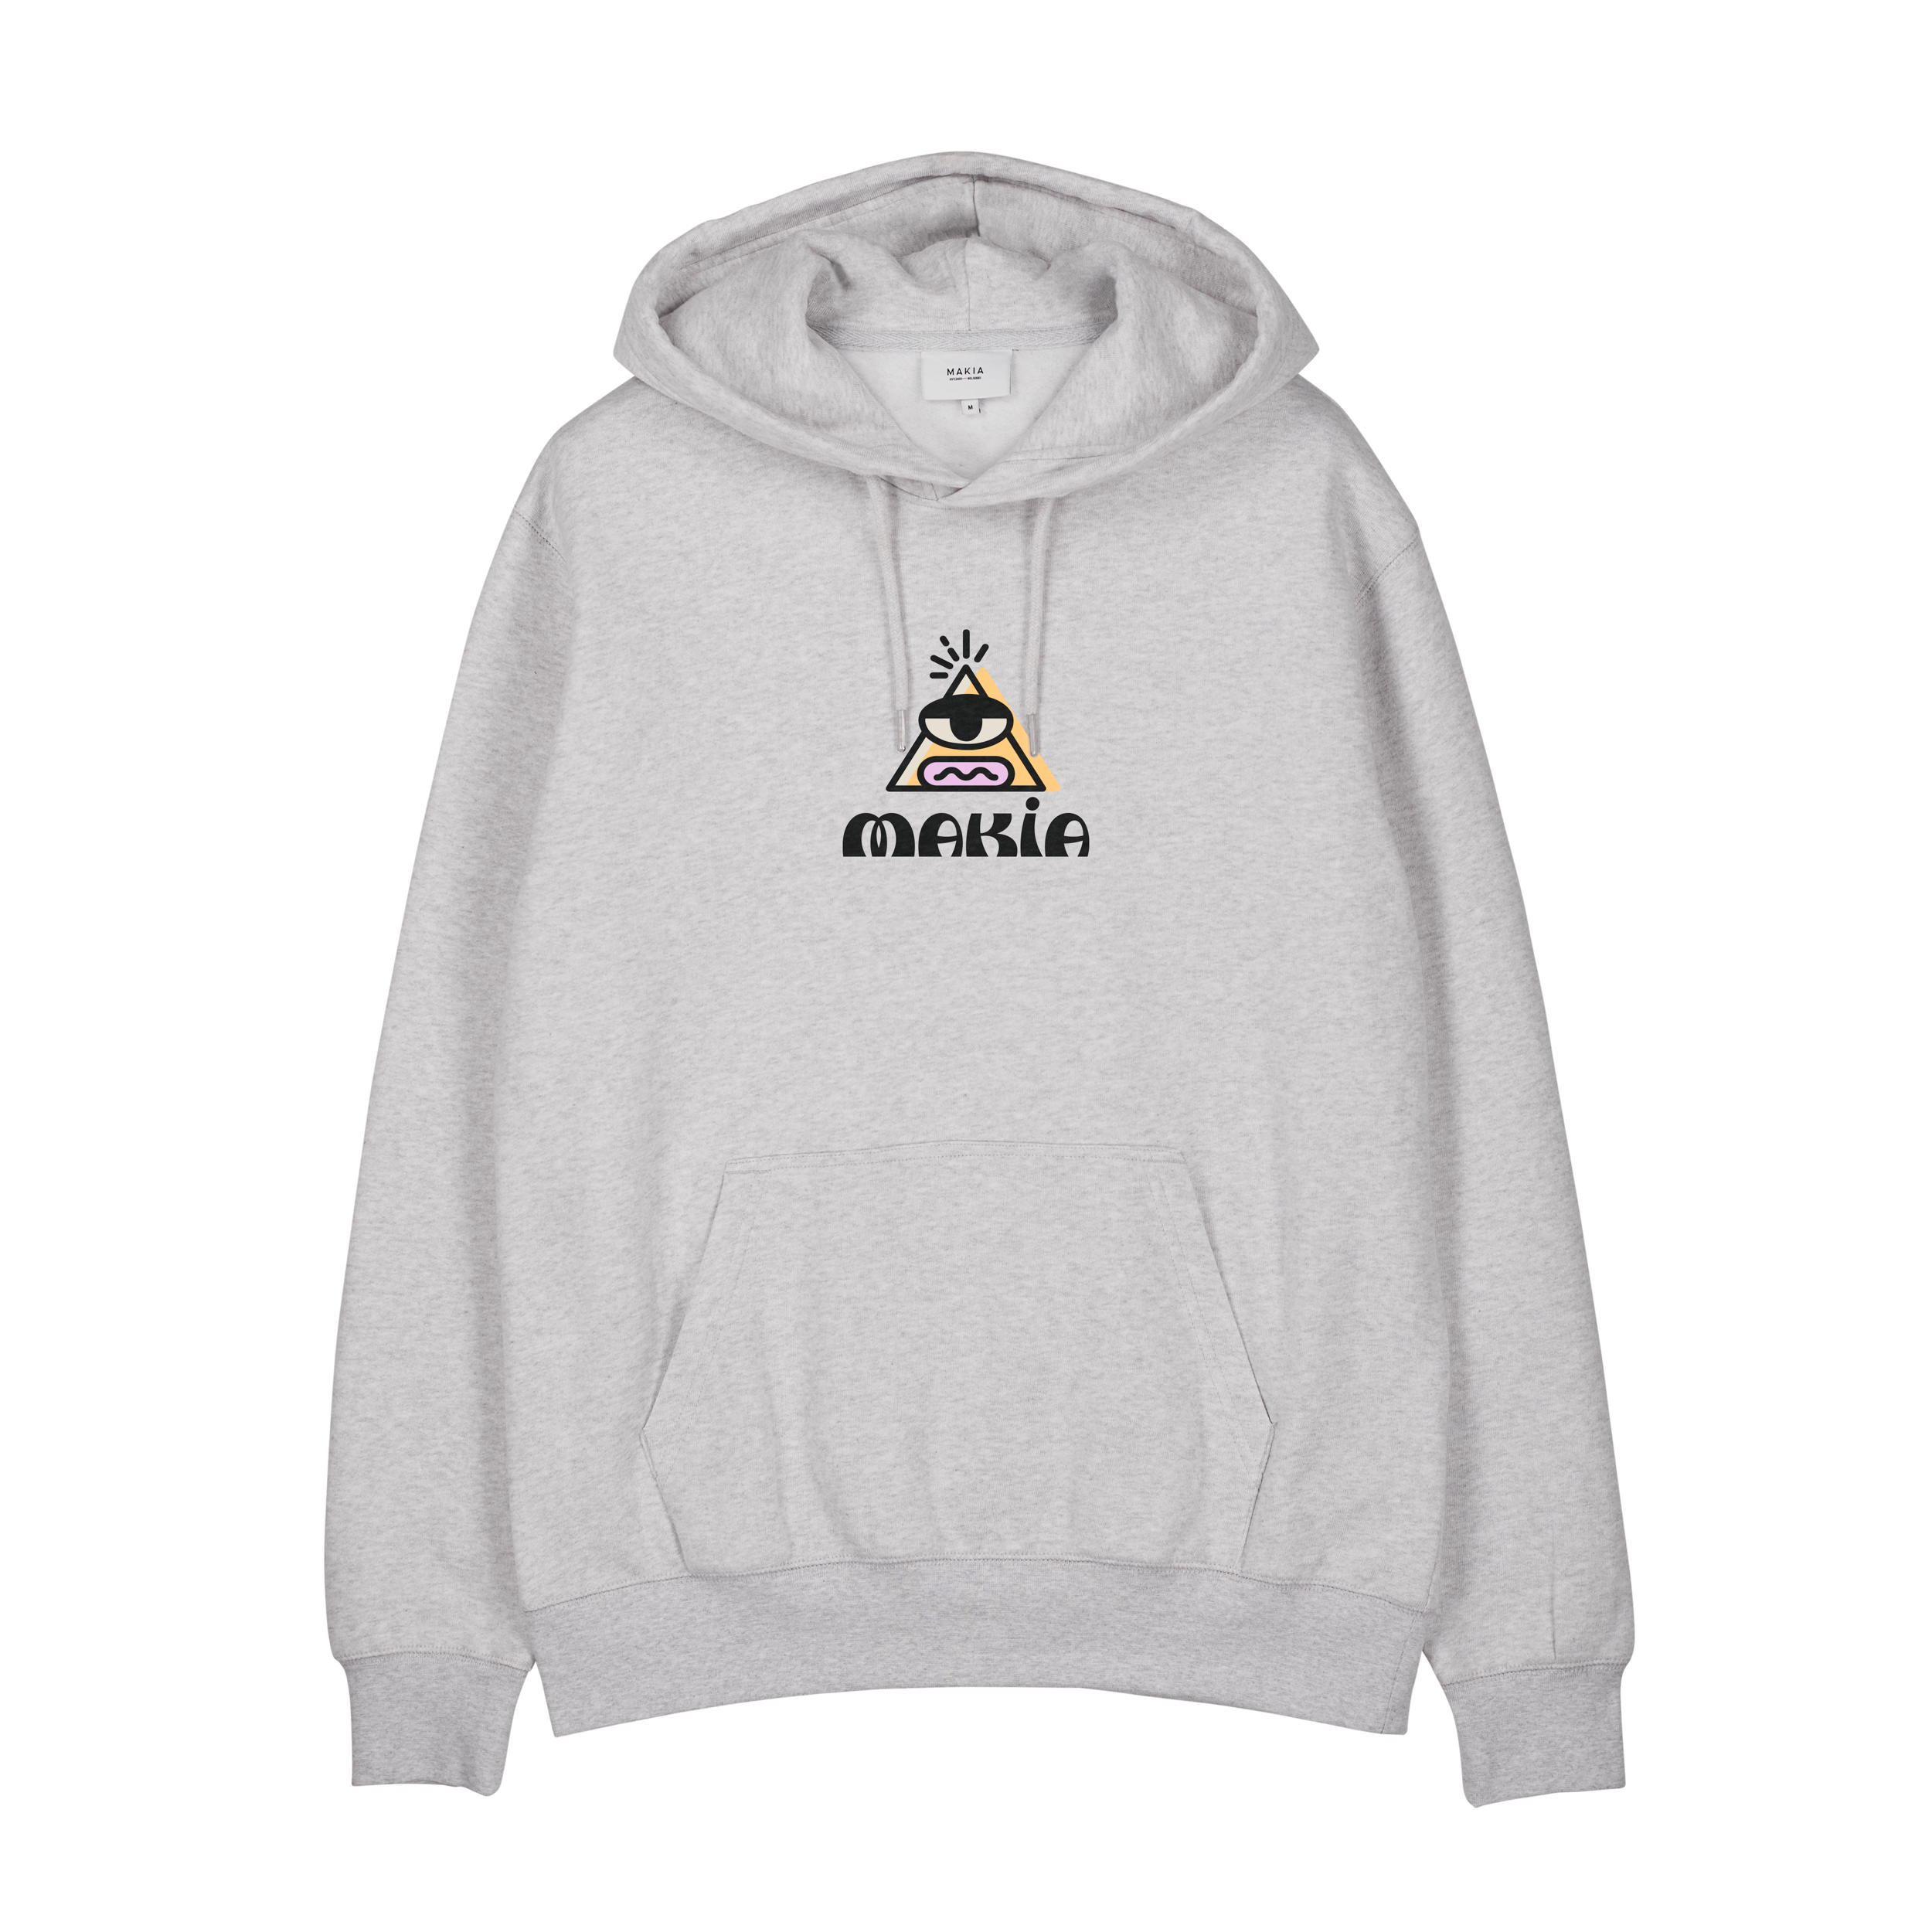 Illuminati Hooded Sweatshirt